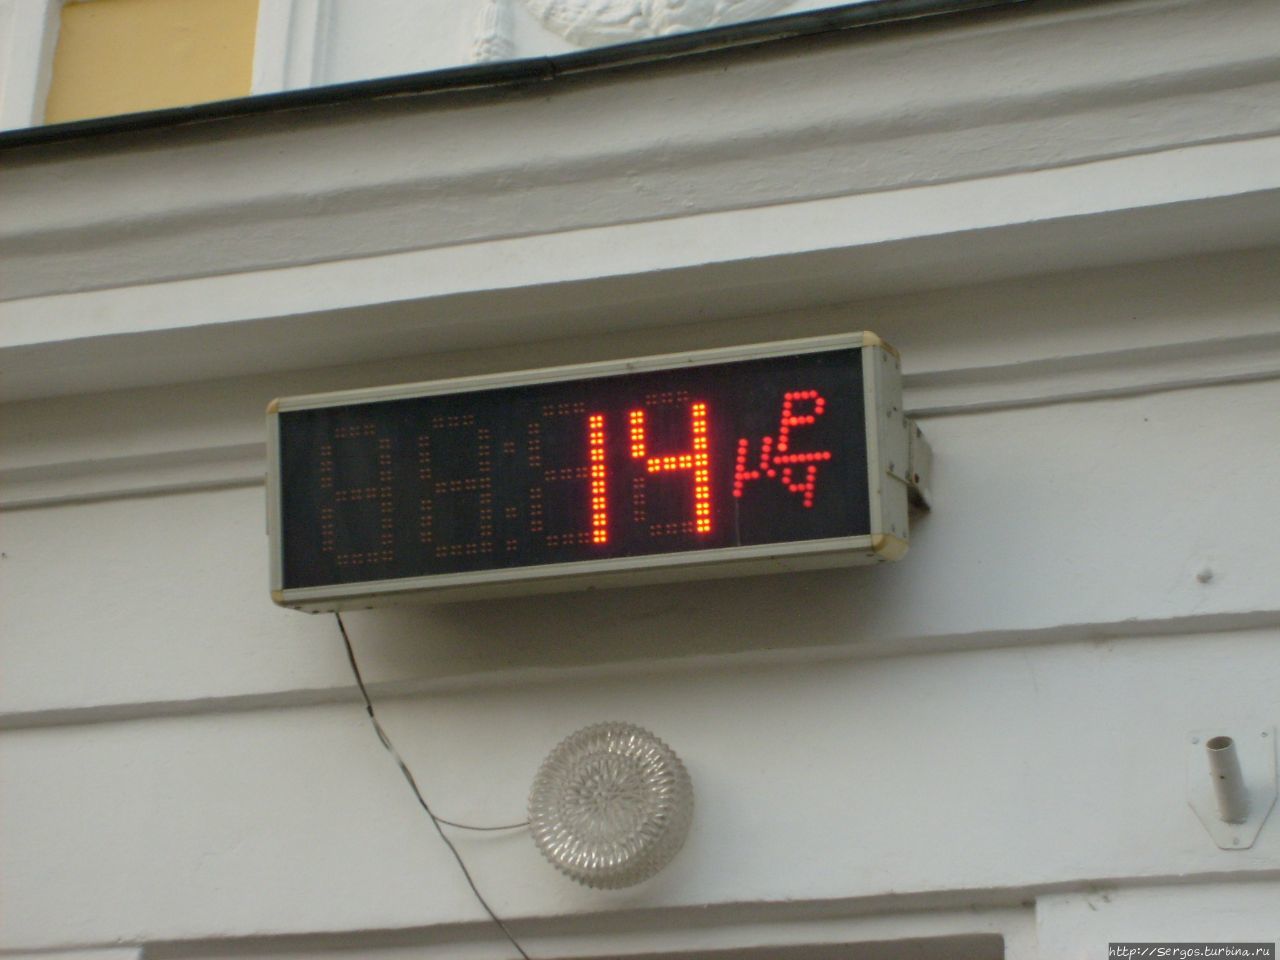 в Пинске, вместе с привычными градусами и минутами, показываются рентген-часы Беларусь